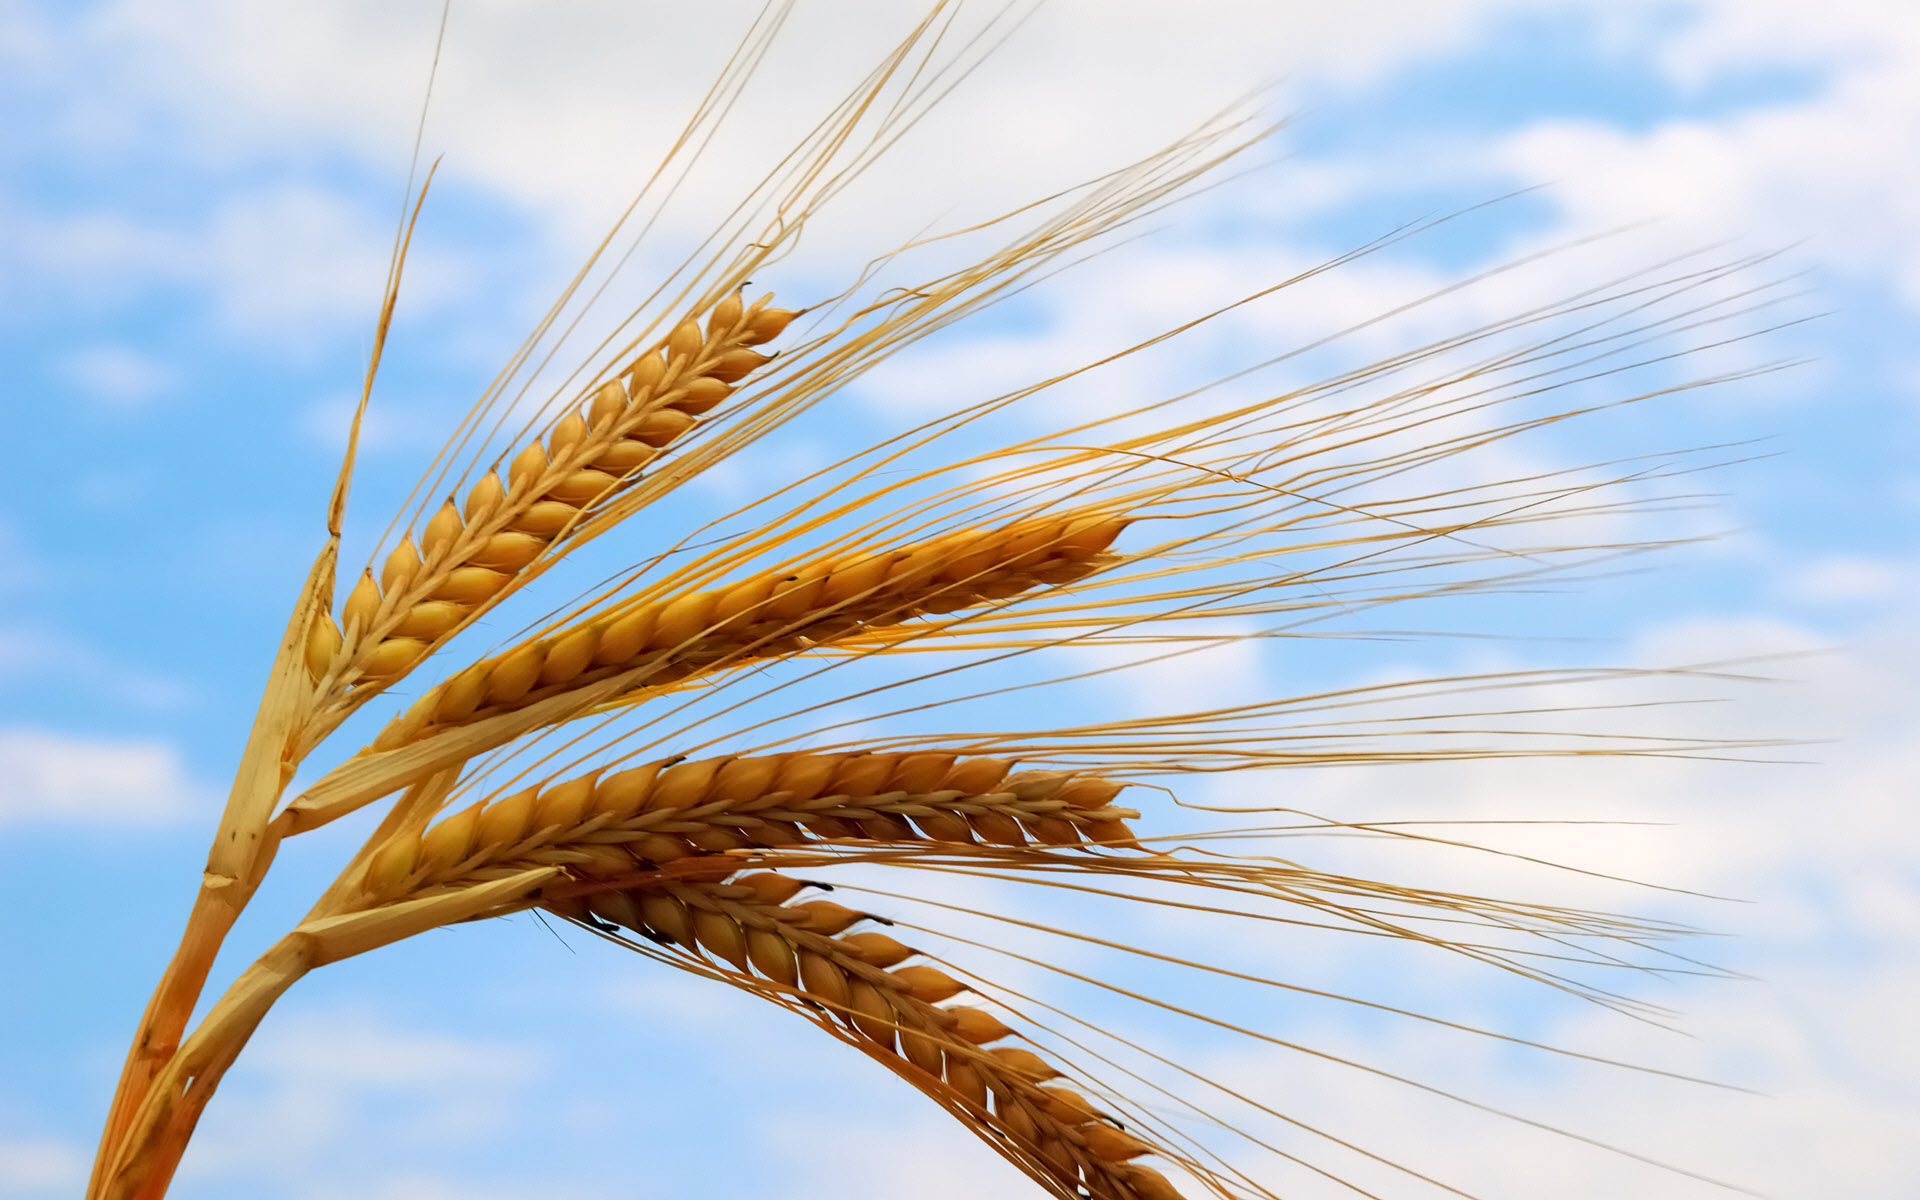 ایجاد ترغیب در بین کشاورزان برای تولید گندم بیشتر در کشور